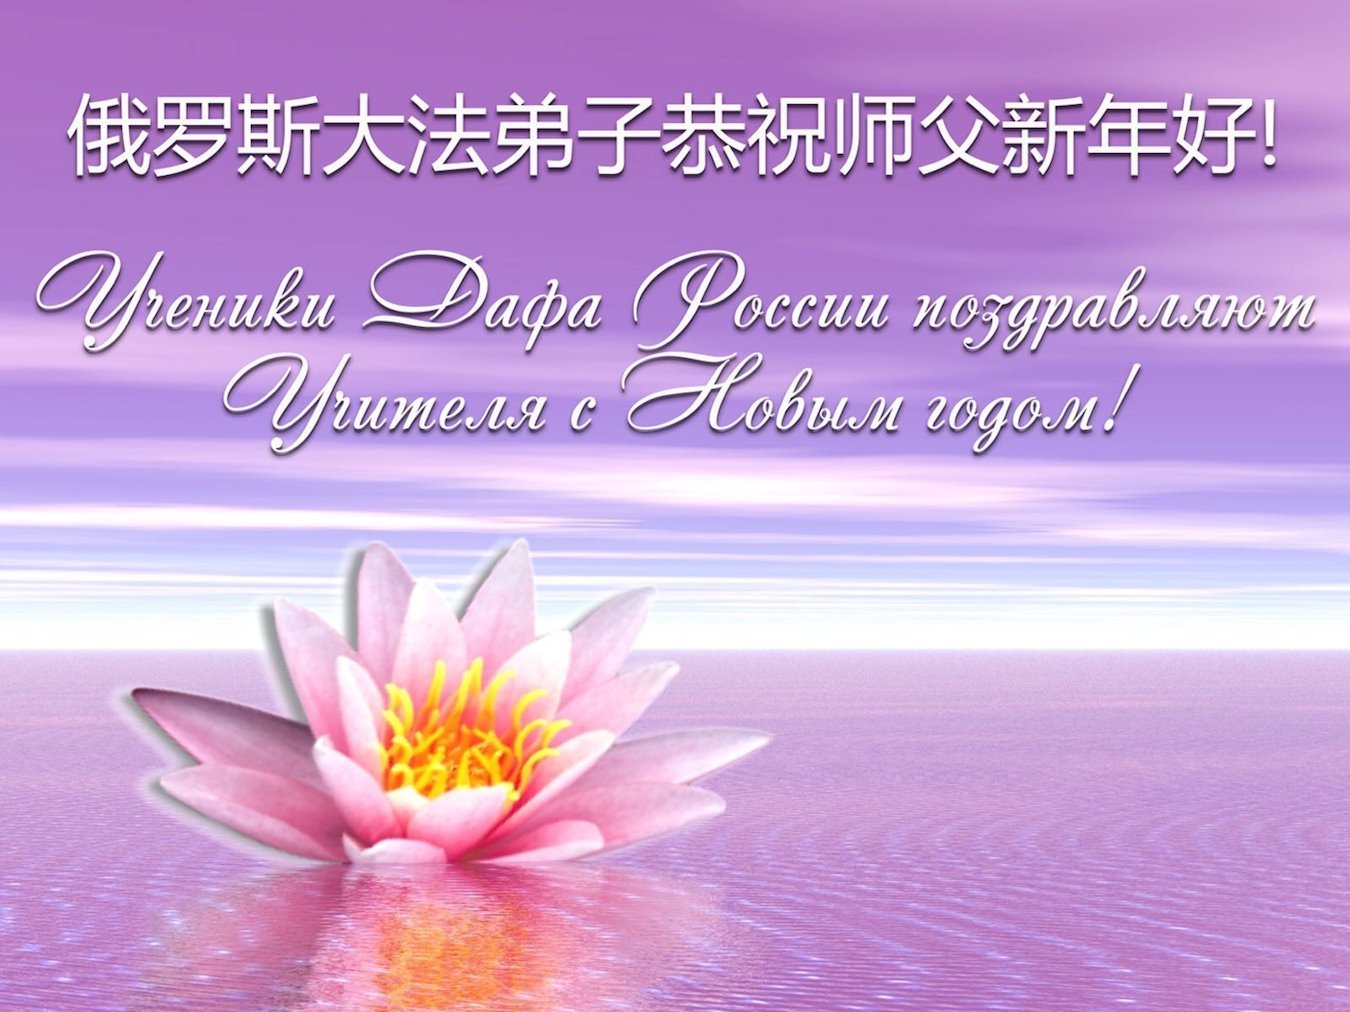 Image for article ​Praktykujący Falun Dafa z krajów europejskich życzą Mistrzowi Li Hongzhi Szczęśliwego Chińskiego Nowego Roku